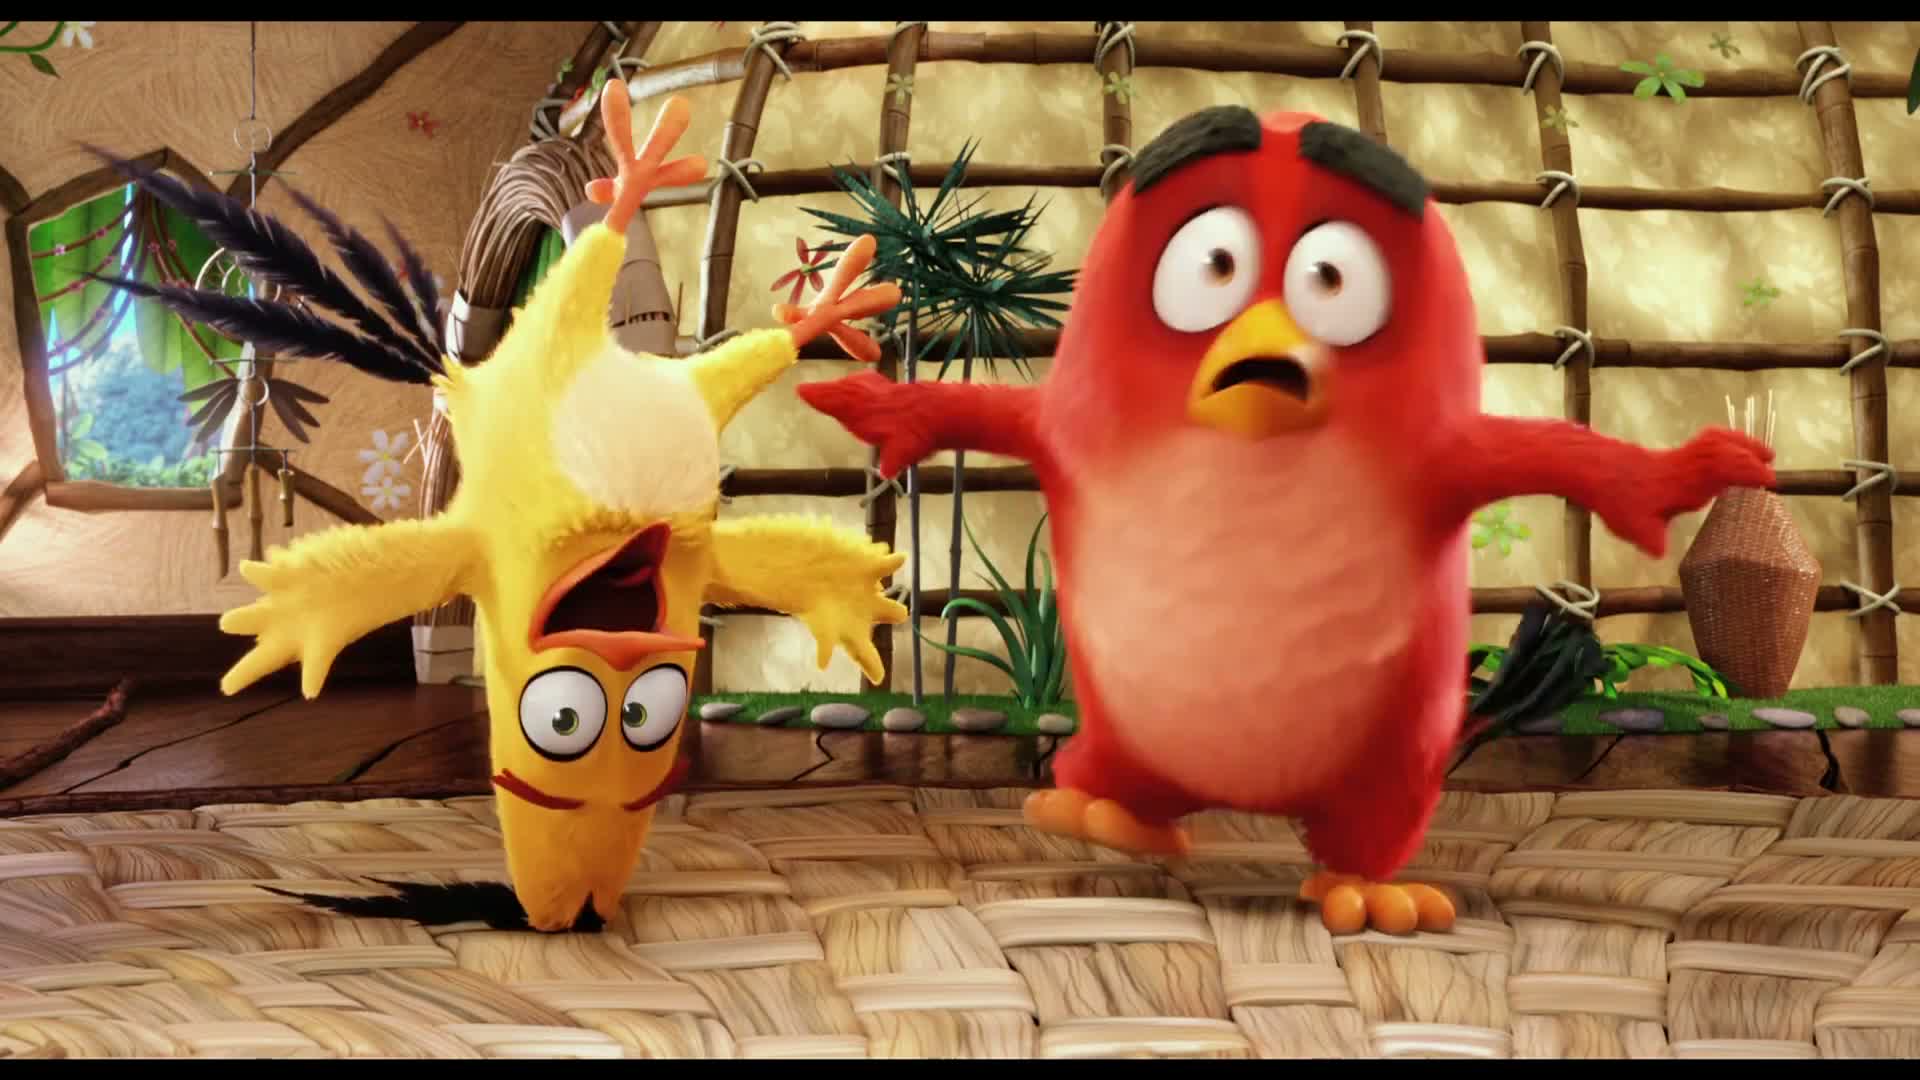 Chystá se animovaný film podle hry Angry Birds